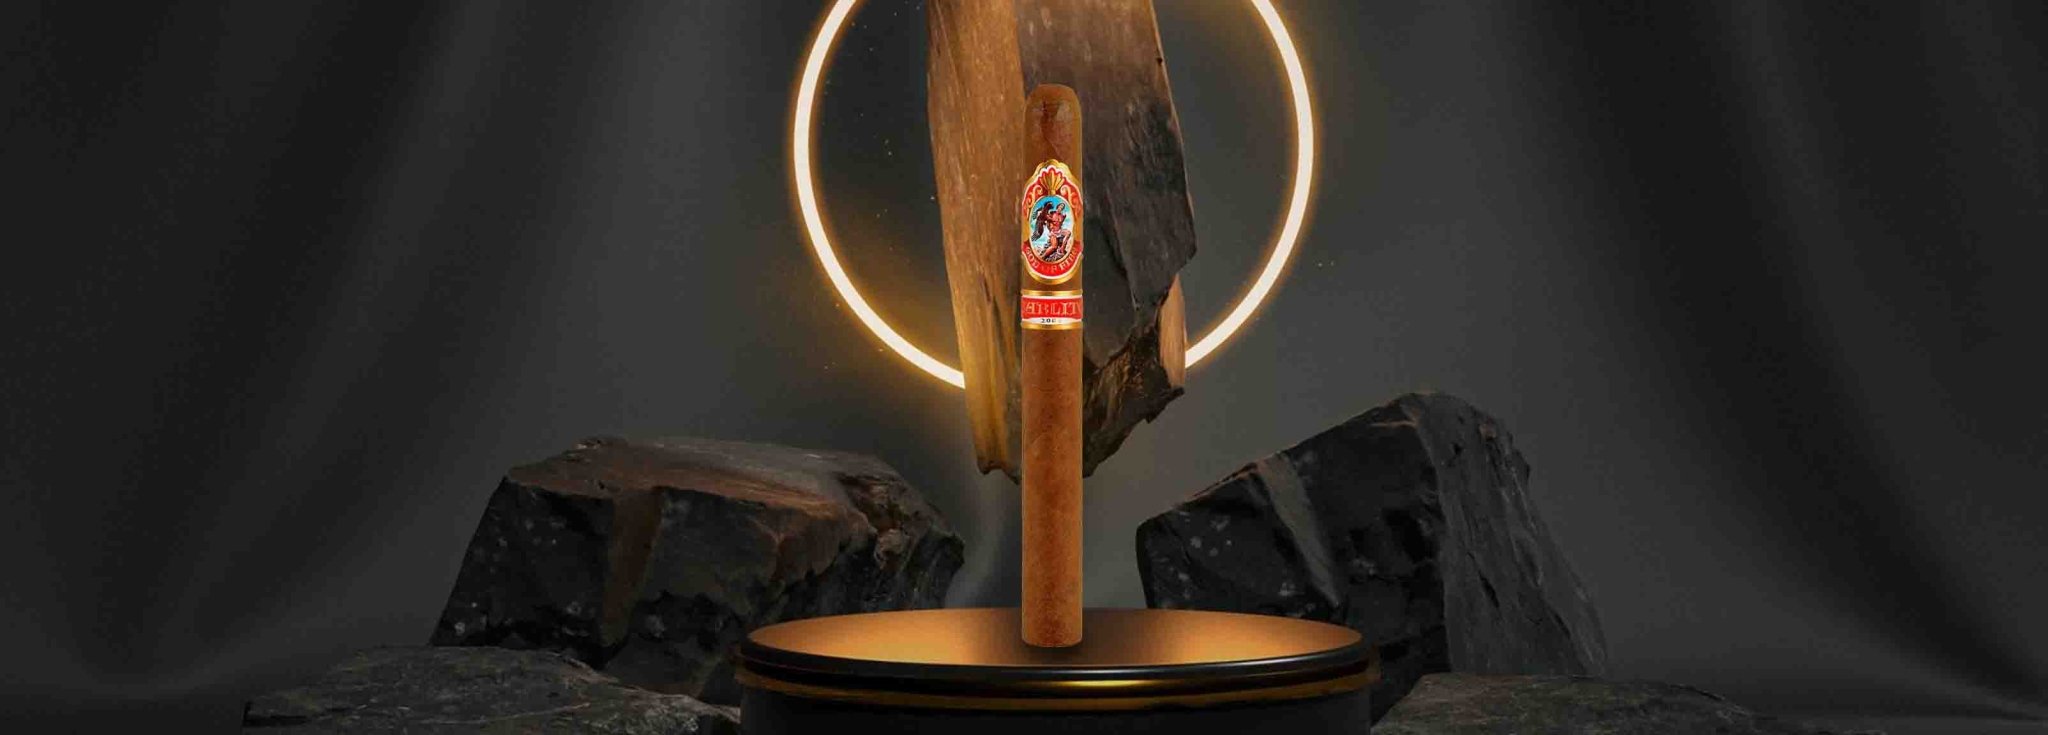 God of Fire - Cigar 30